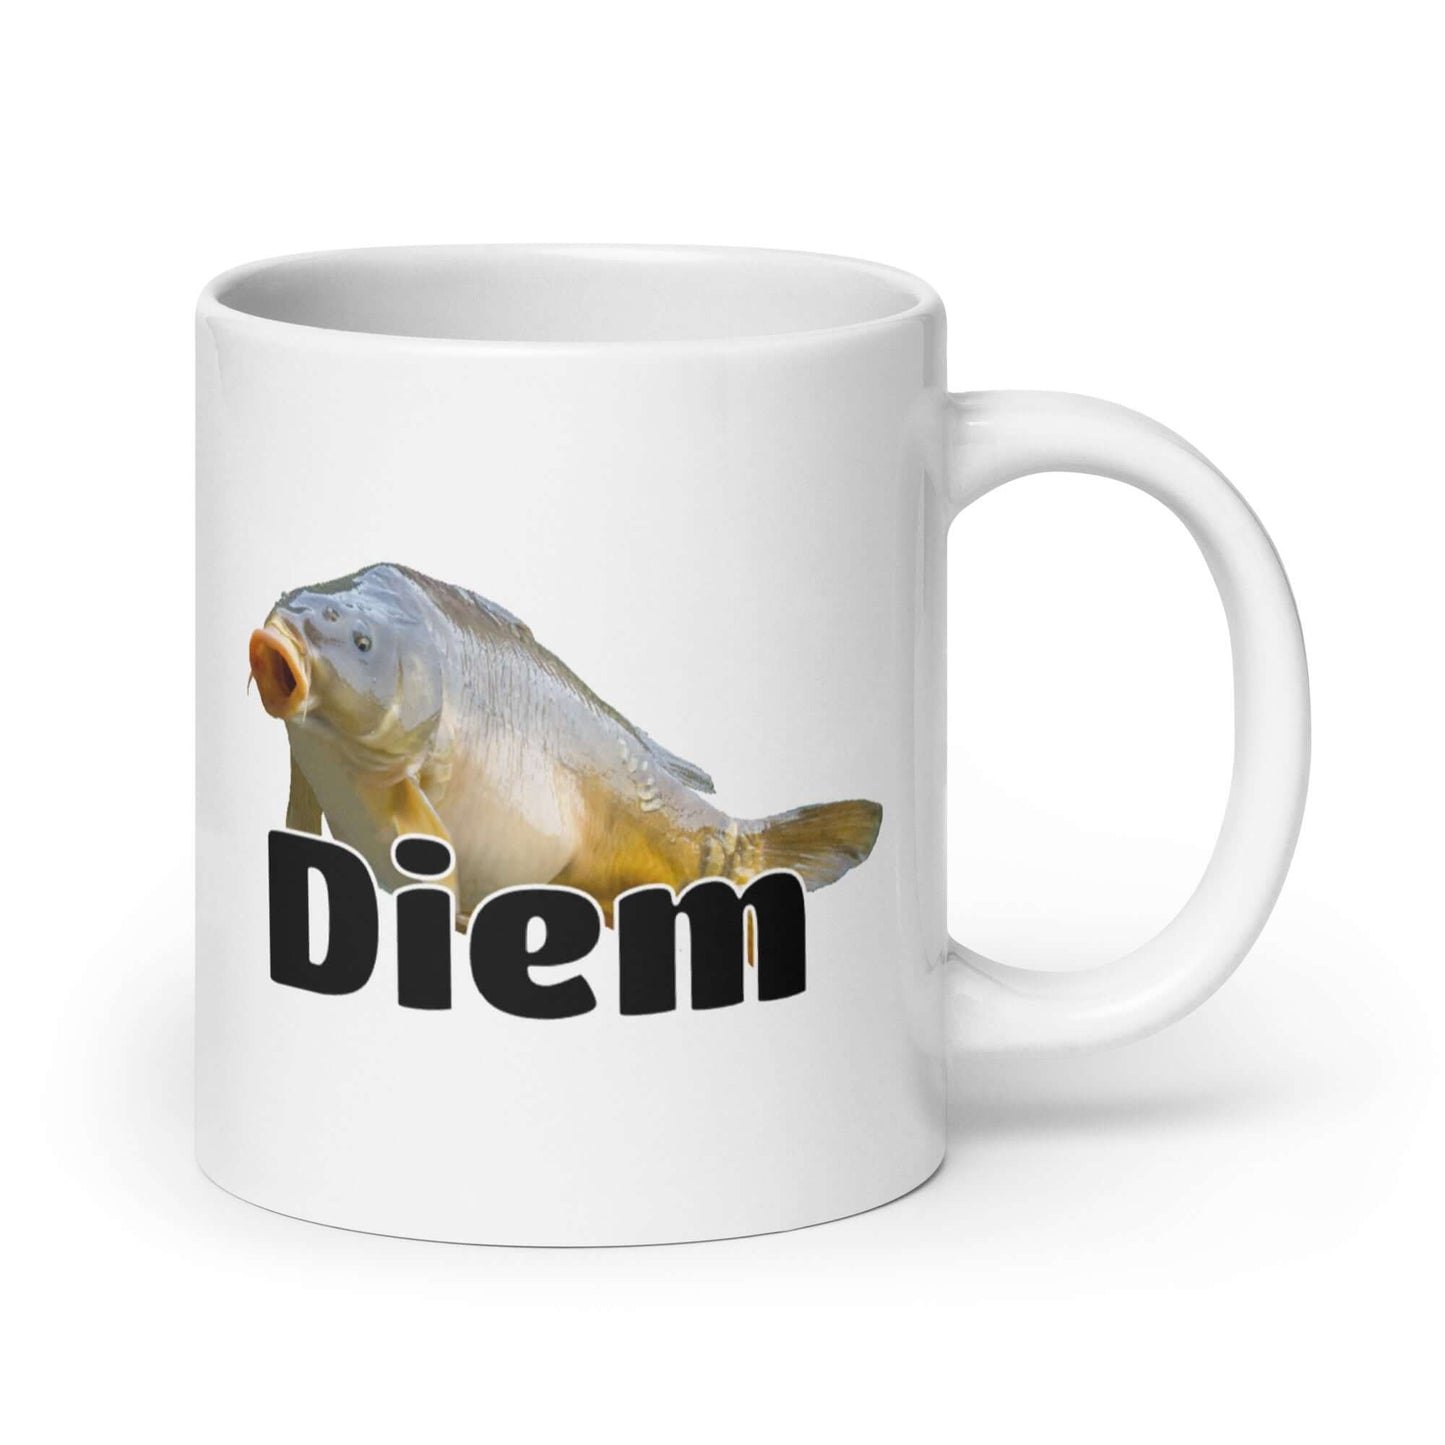 Funny Carpe Diem pun carp fish mug